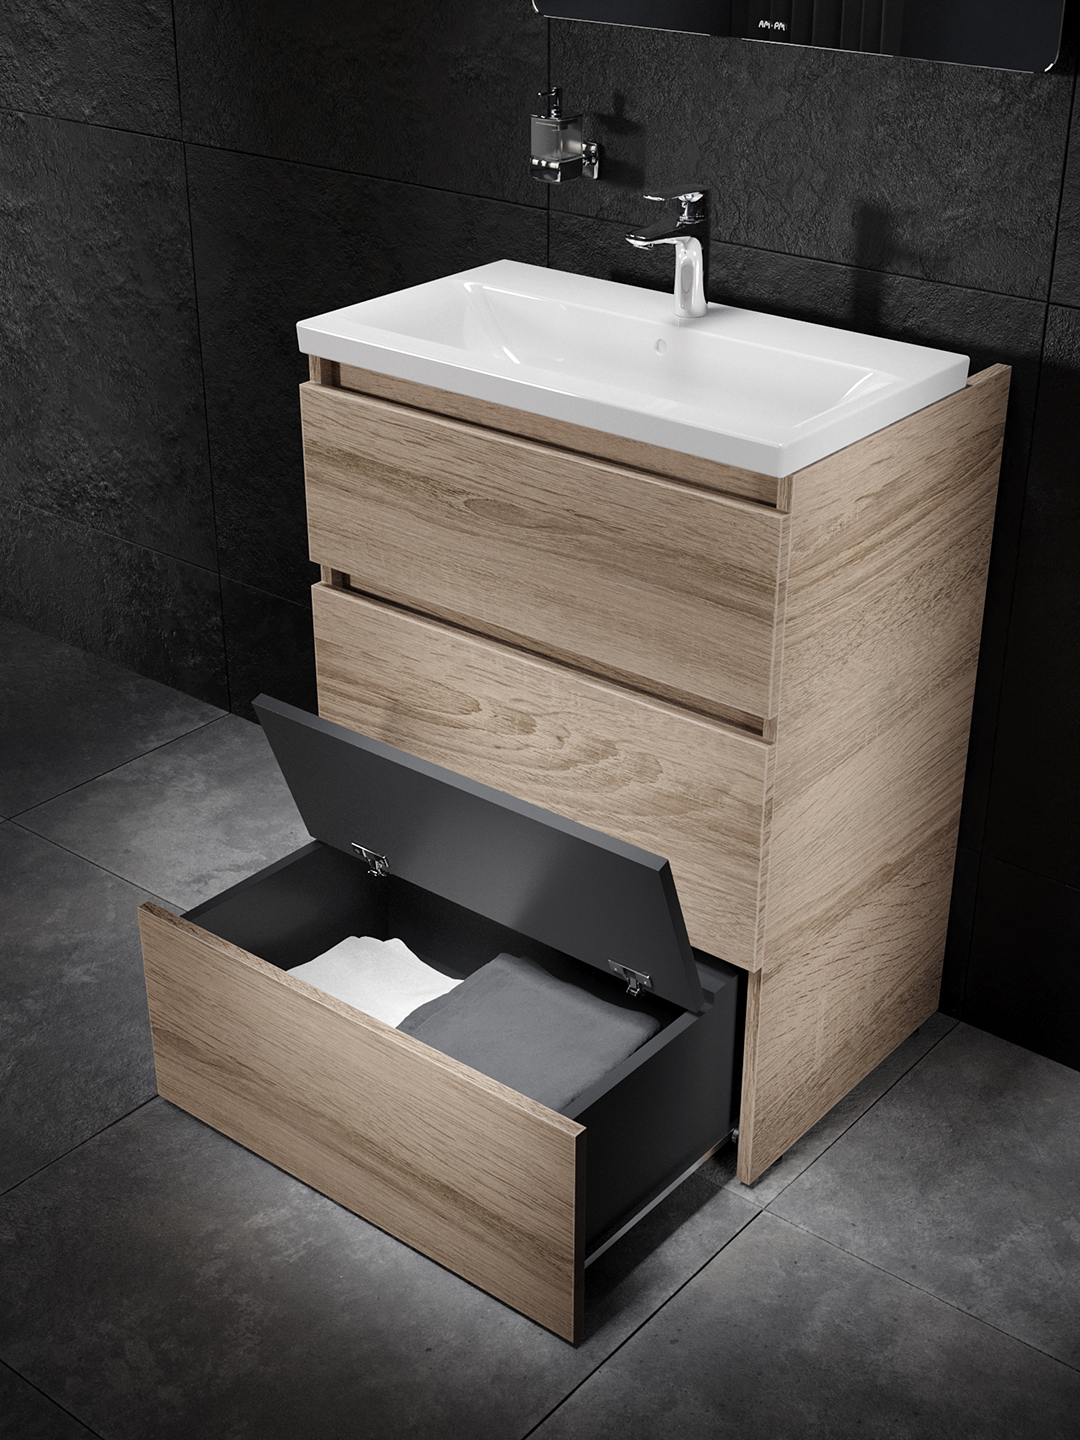 Rendu 3D d'un meuble de salle de bain avec un évier et avec des serviettes banches et grises dans un tiroire